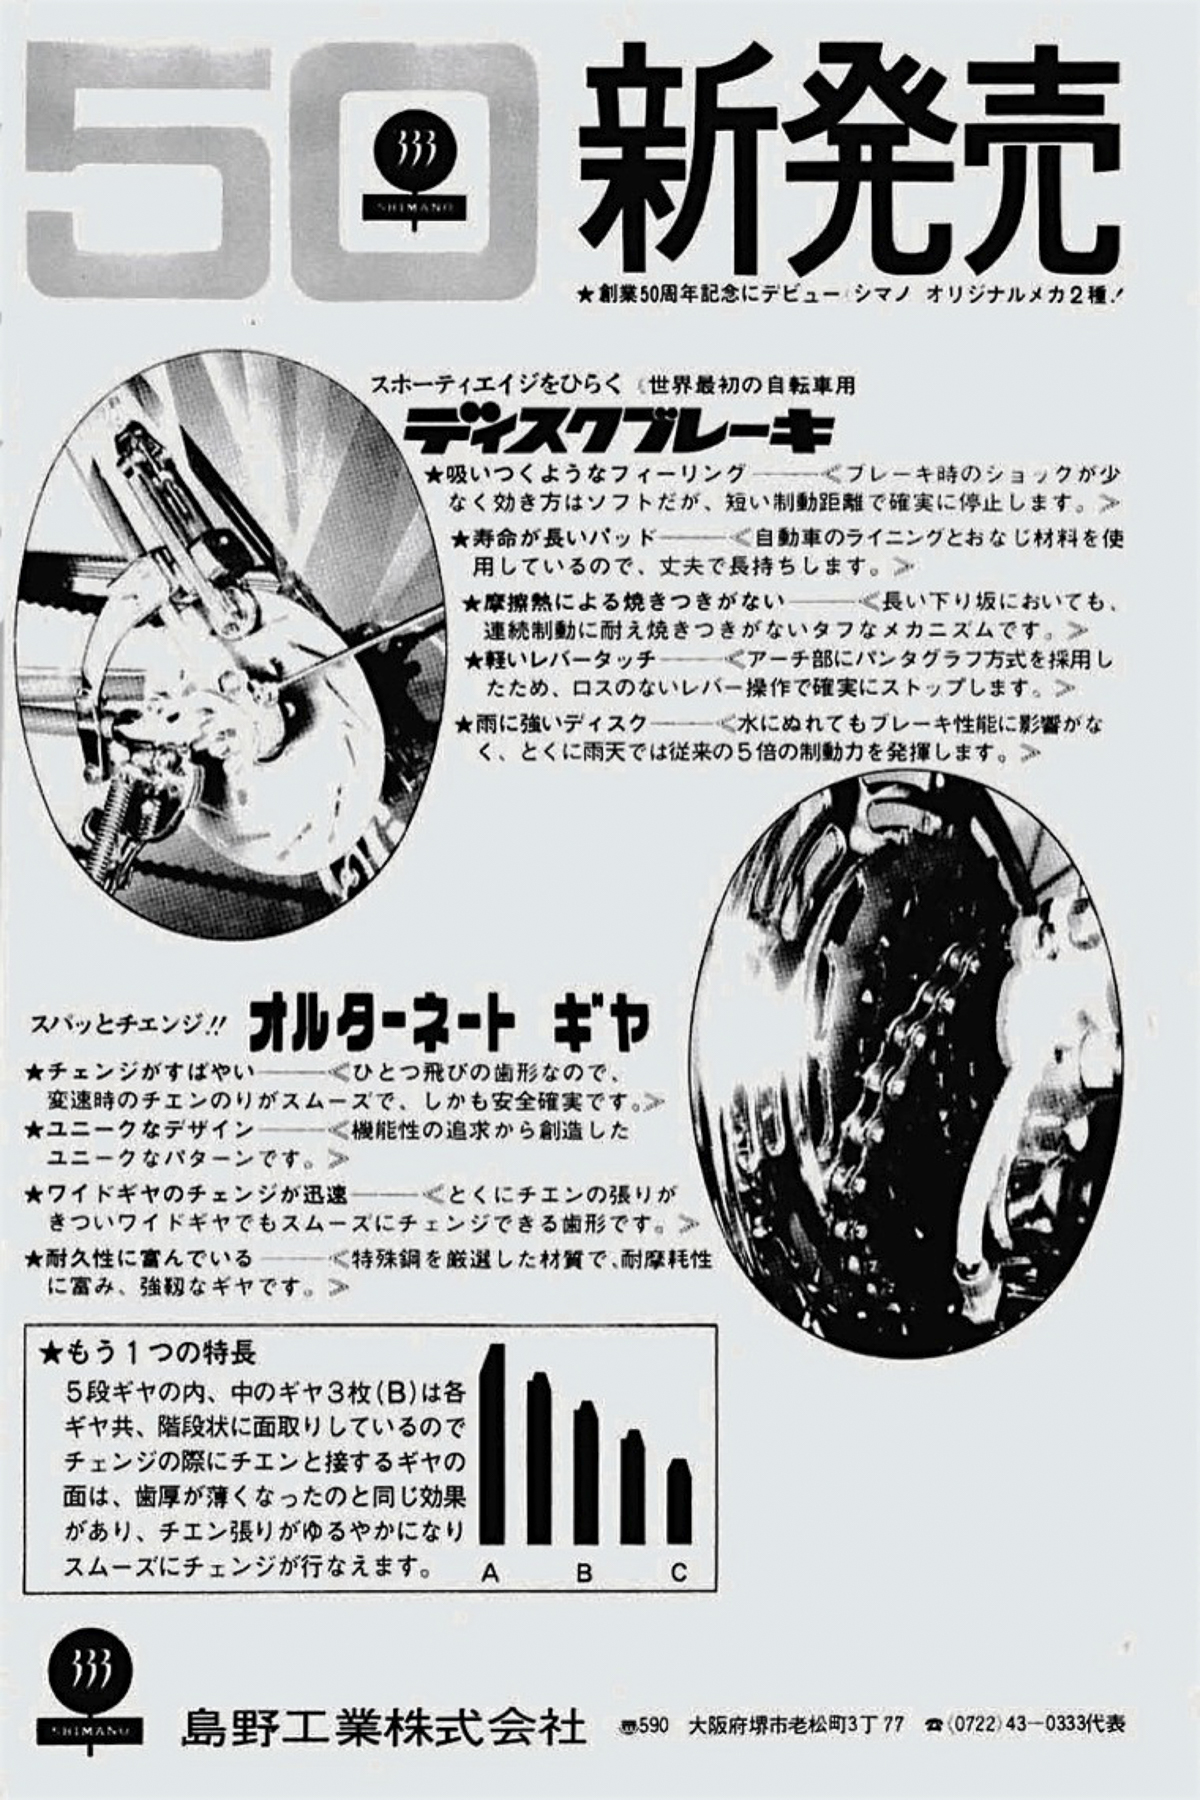 1971_12 New Cycling Shimano ad-filtered.jpg